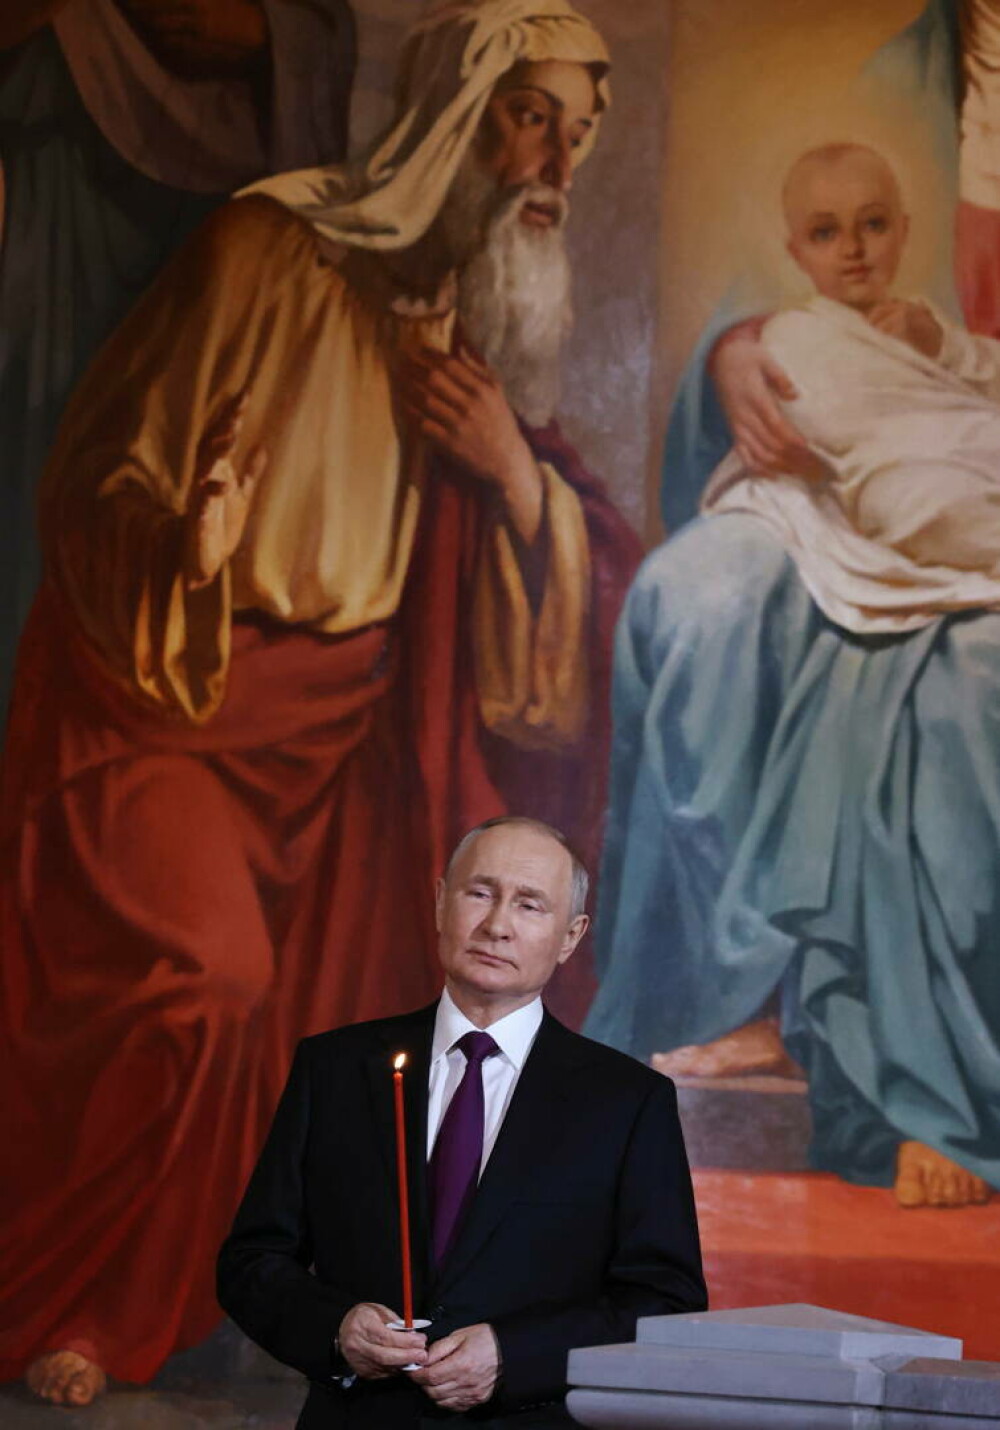 Semnul bizar observat pe gâtul lui Vladimir Putin. Ce ar putea indica. FOTO - Imaginea 2